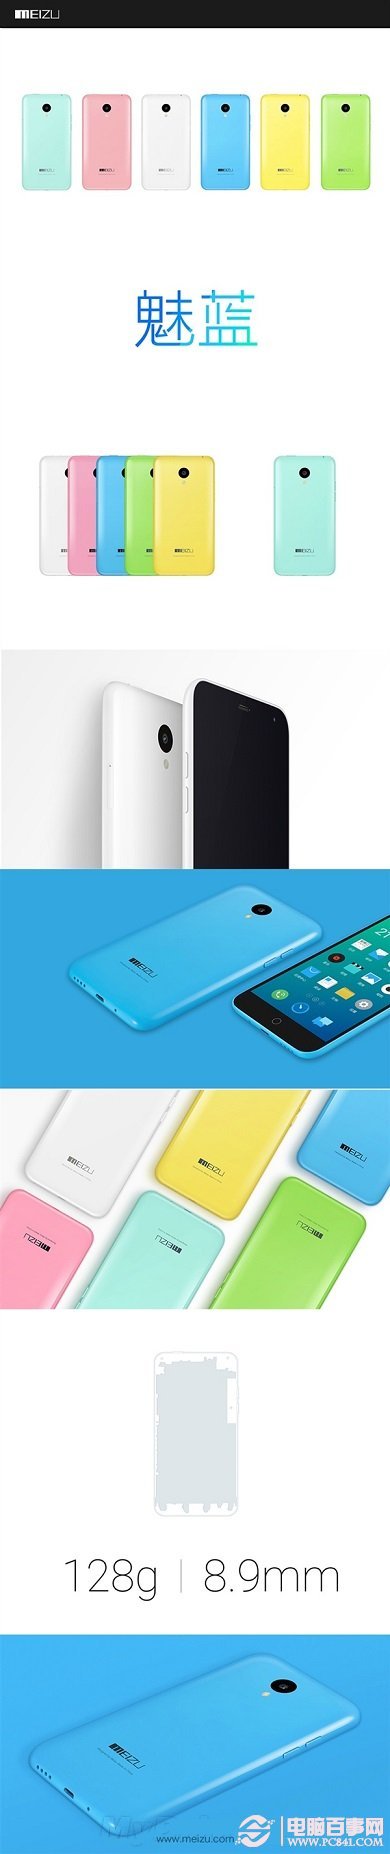 魅蓝手机有几种颜色？魅蓝哪个颜色好看？